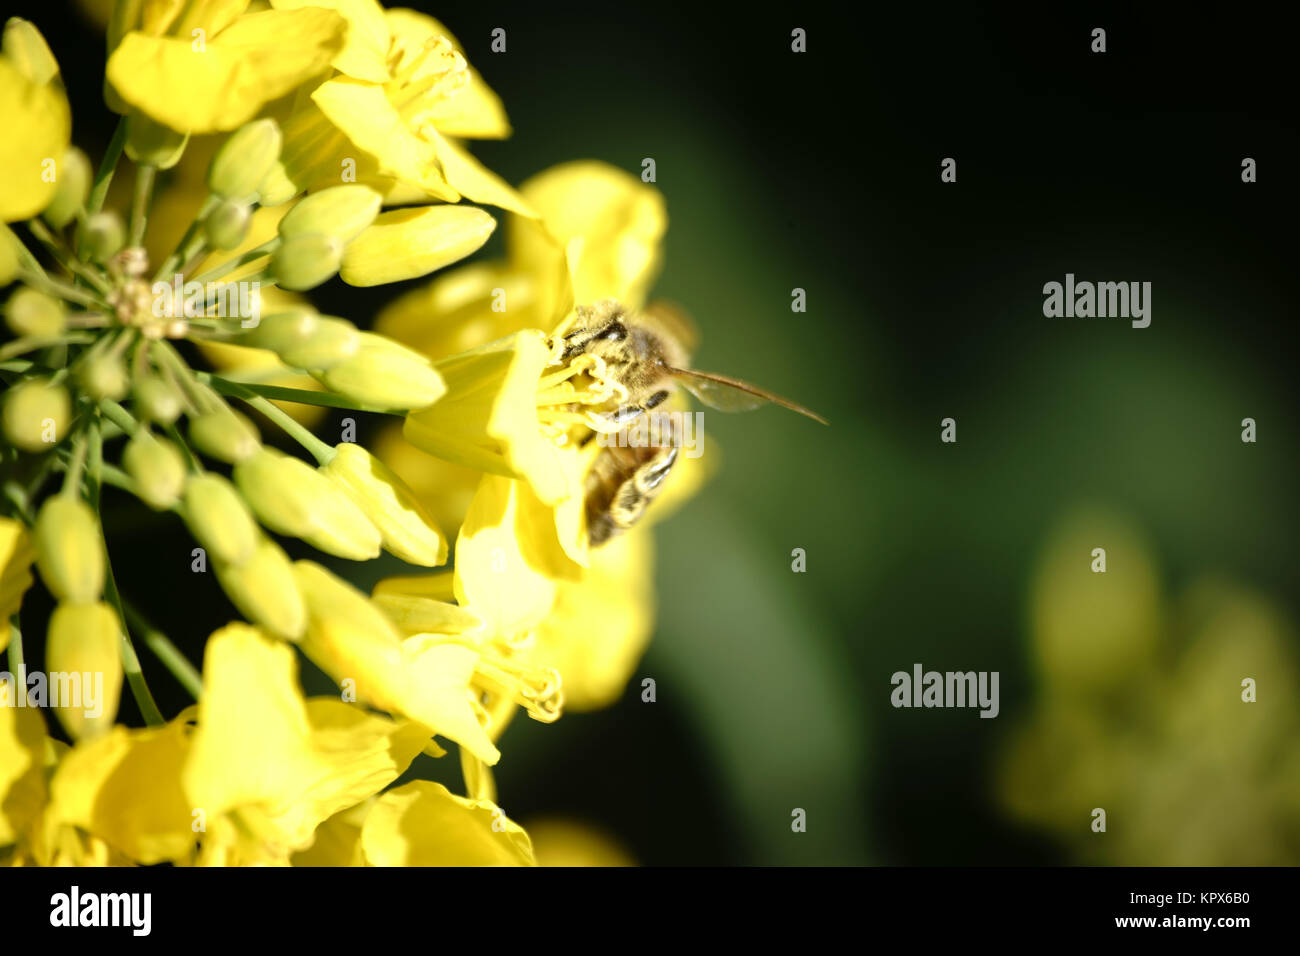 Die Nahaufnahme einer Gelb blühende Rapsblüte, die von einer Biene bestäubt wird. Stock Photo